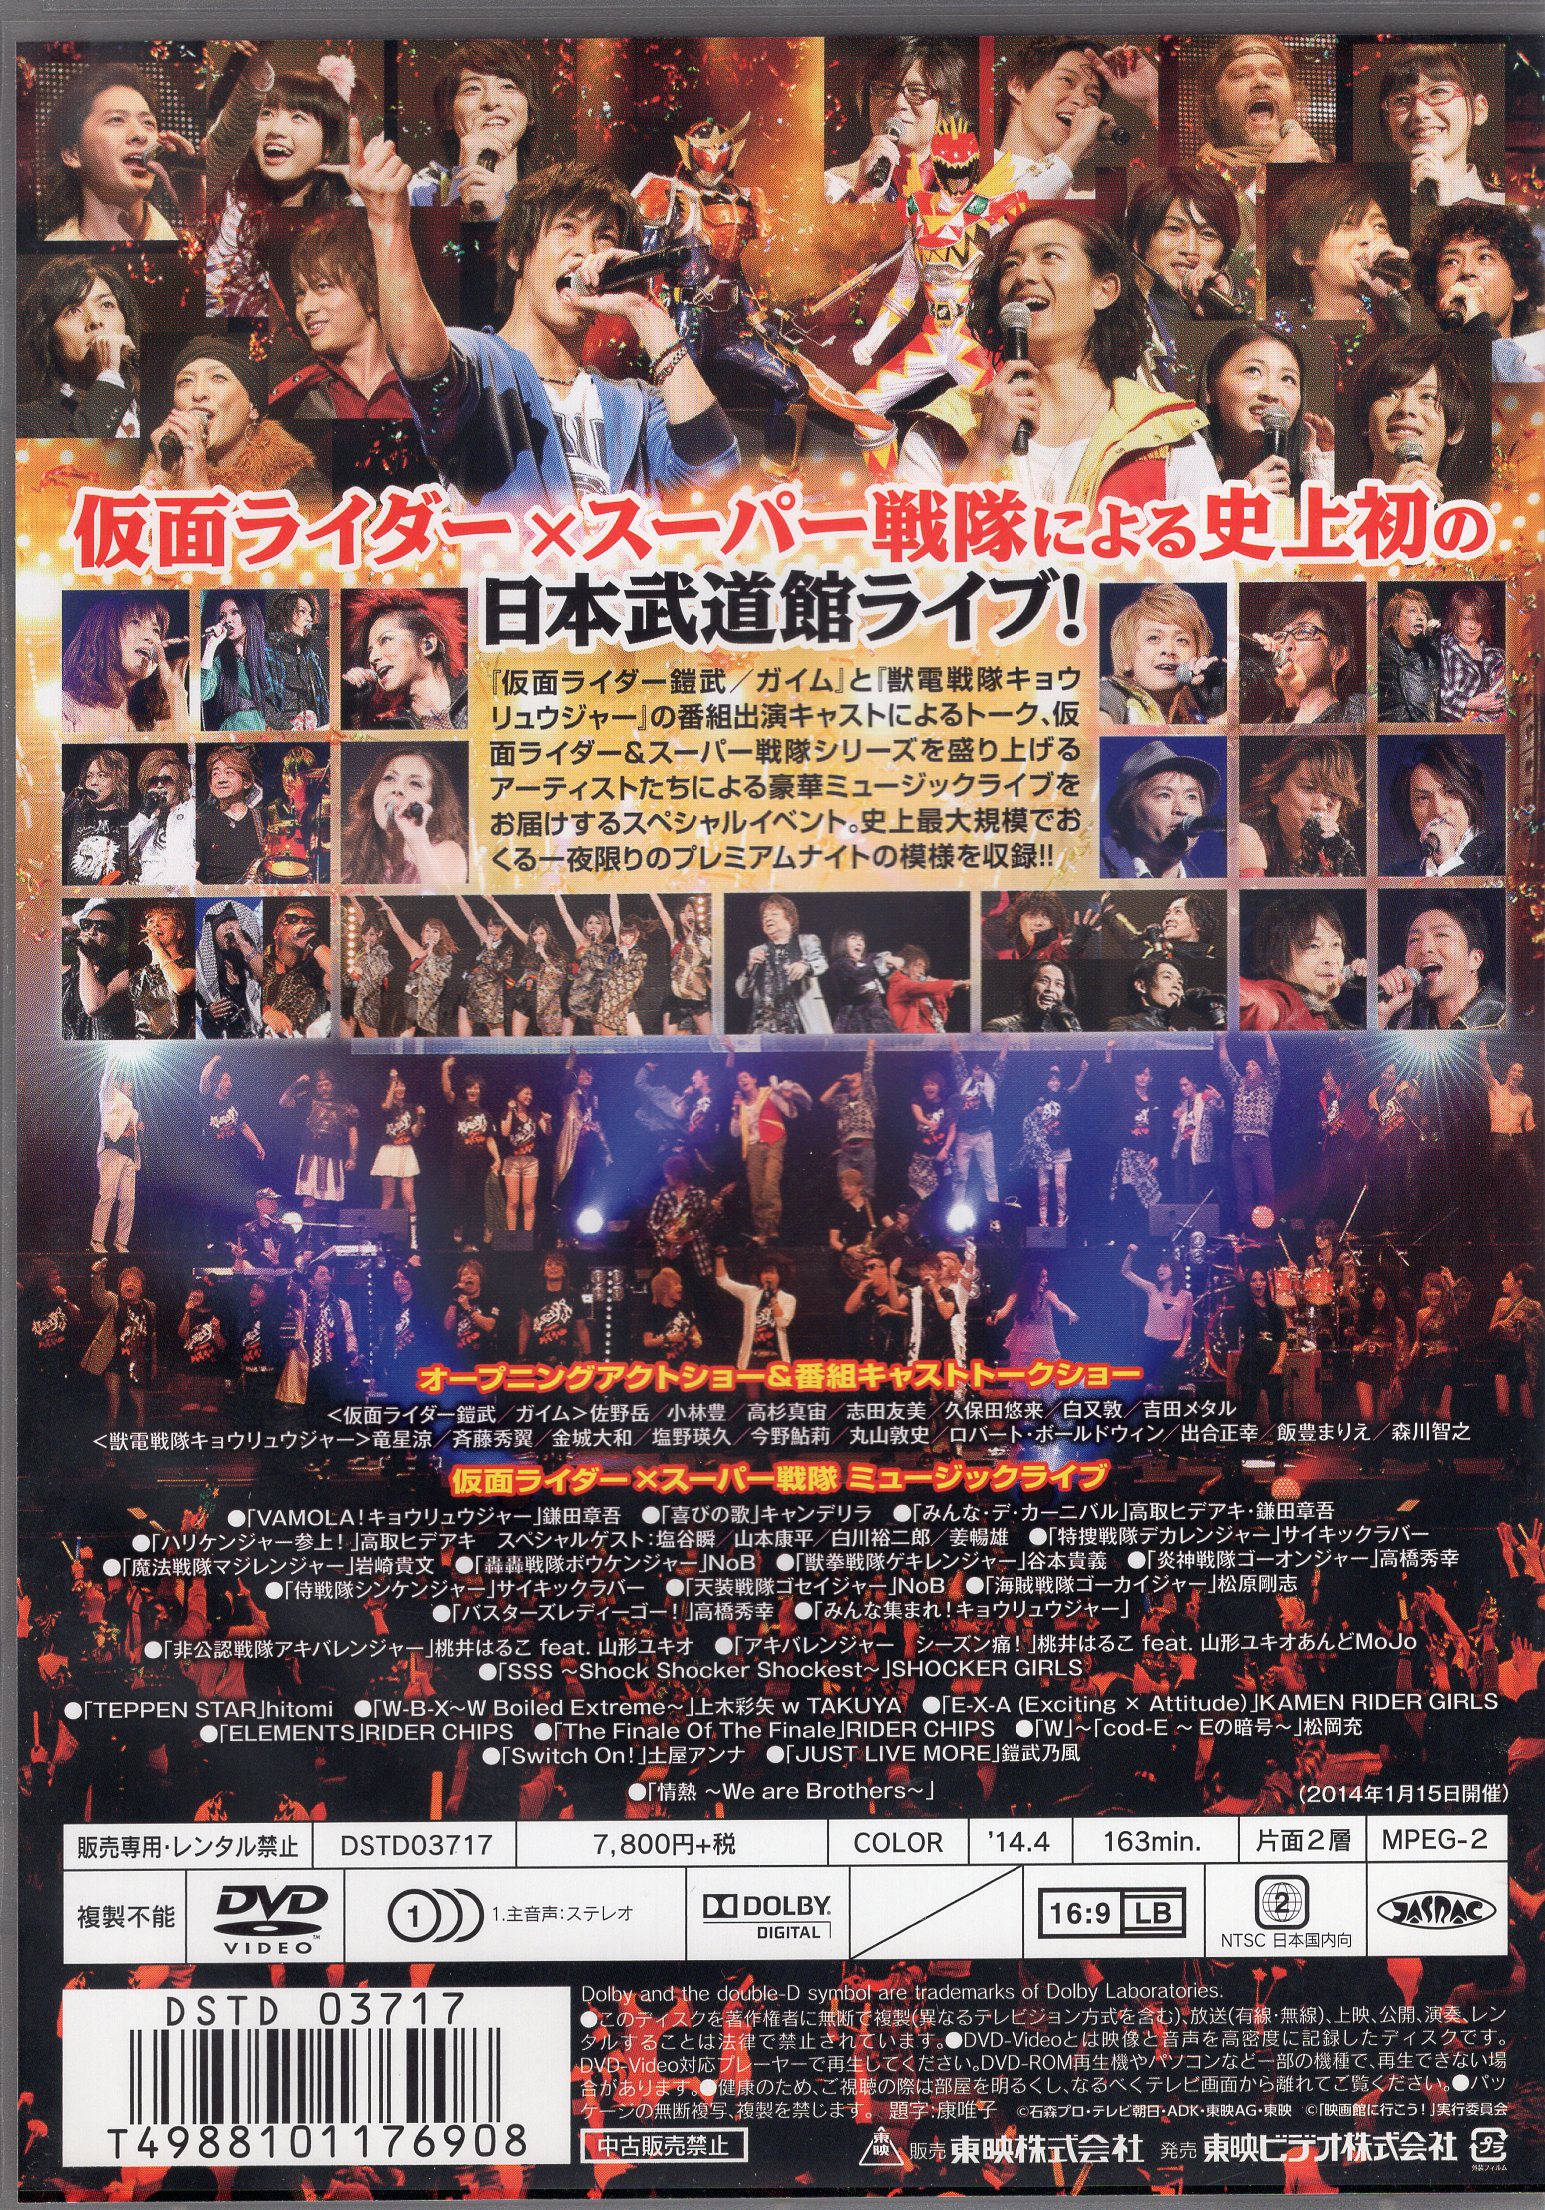 Tokusatsu Dvd Super Hero Festival 14 Mandarake 在线商店